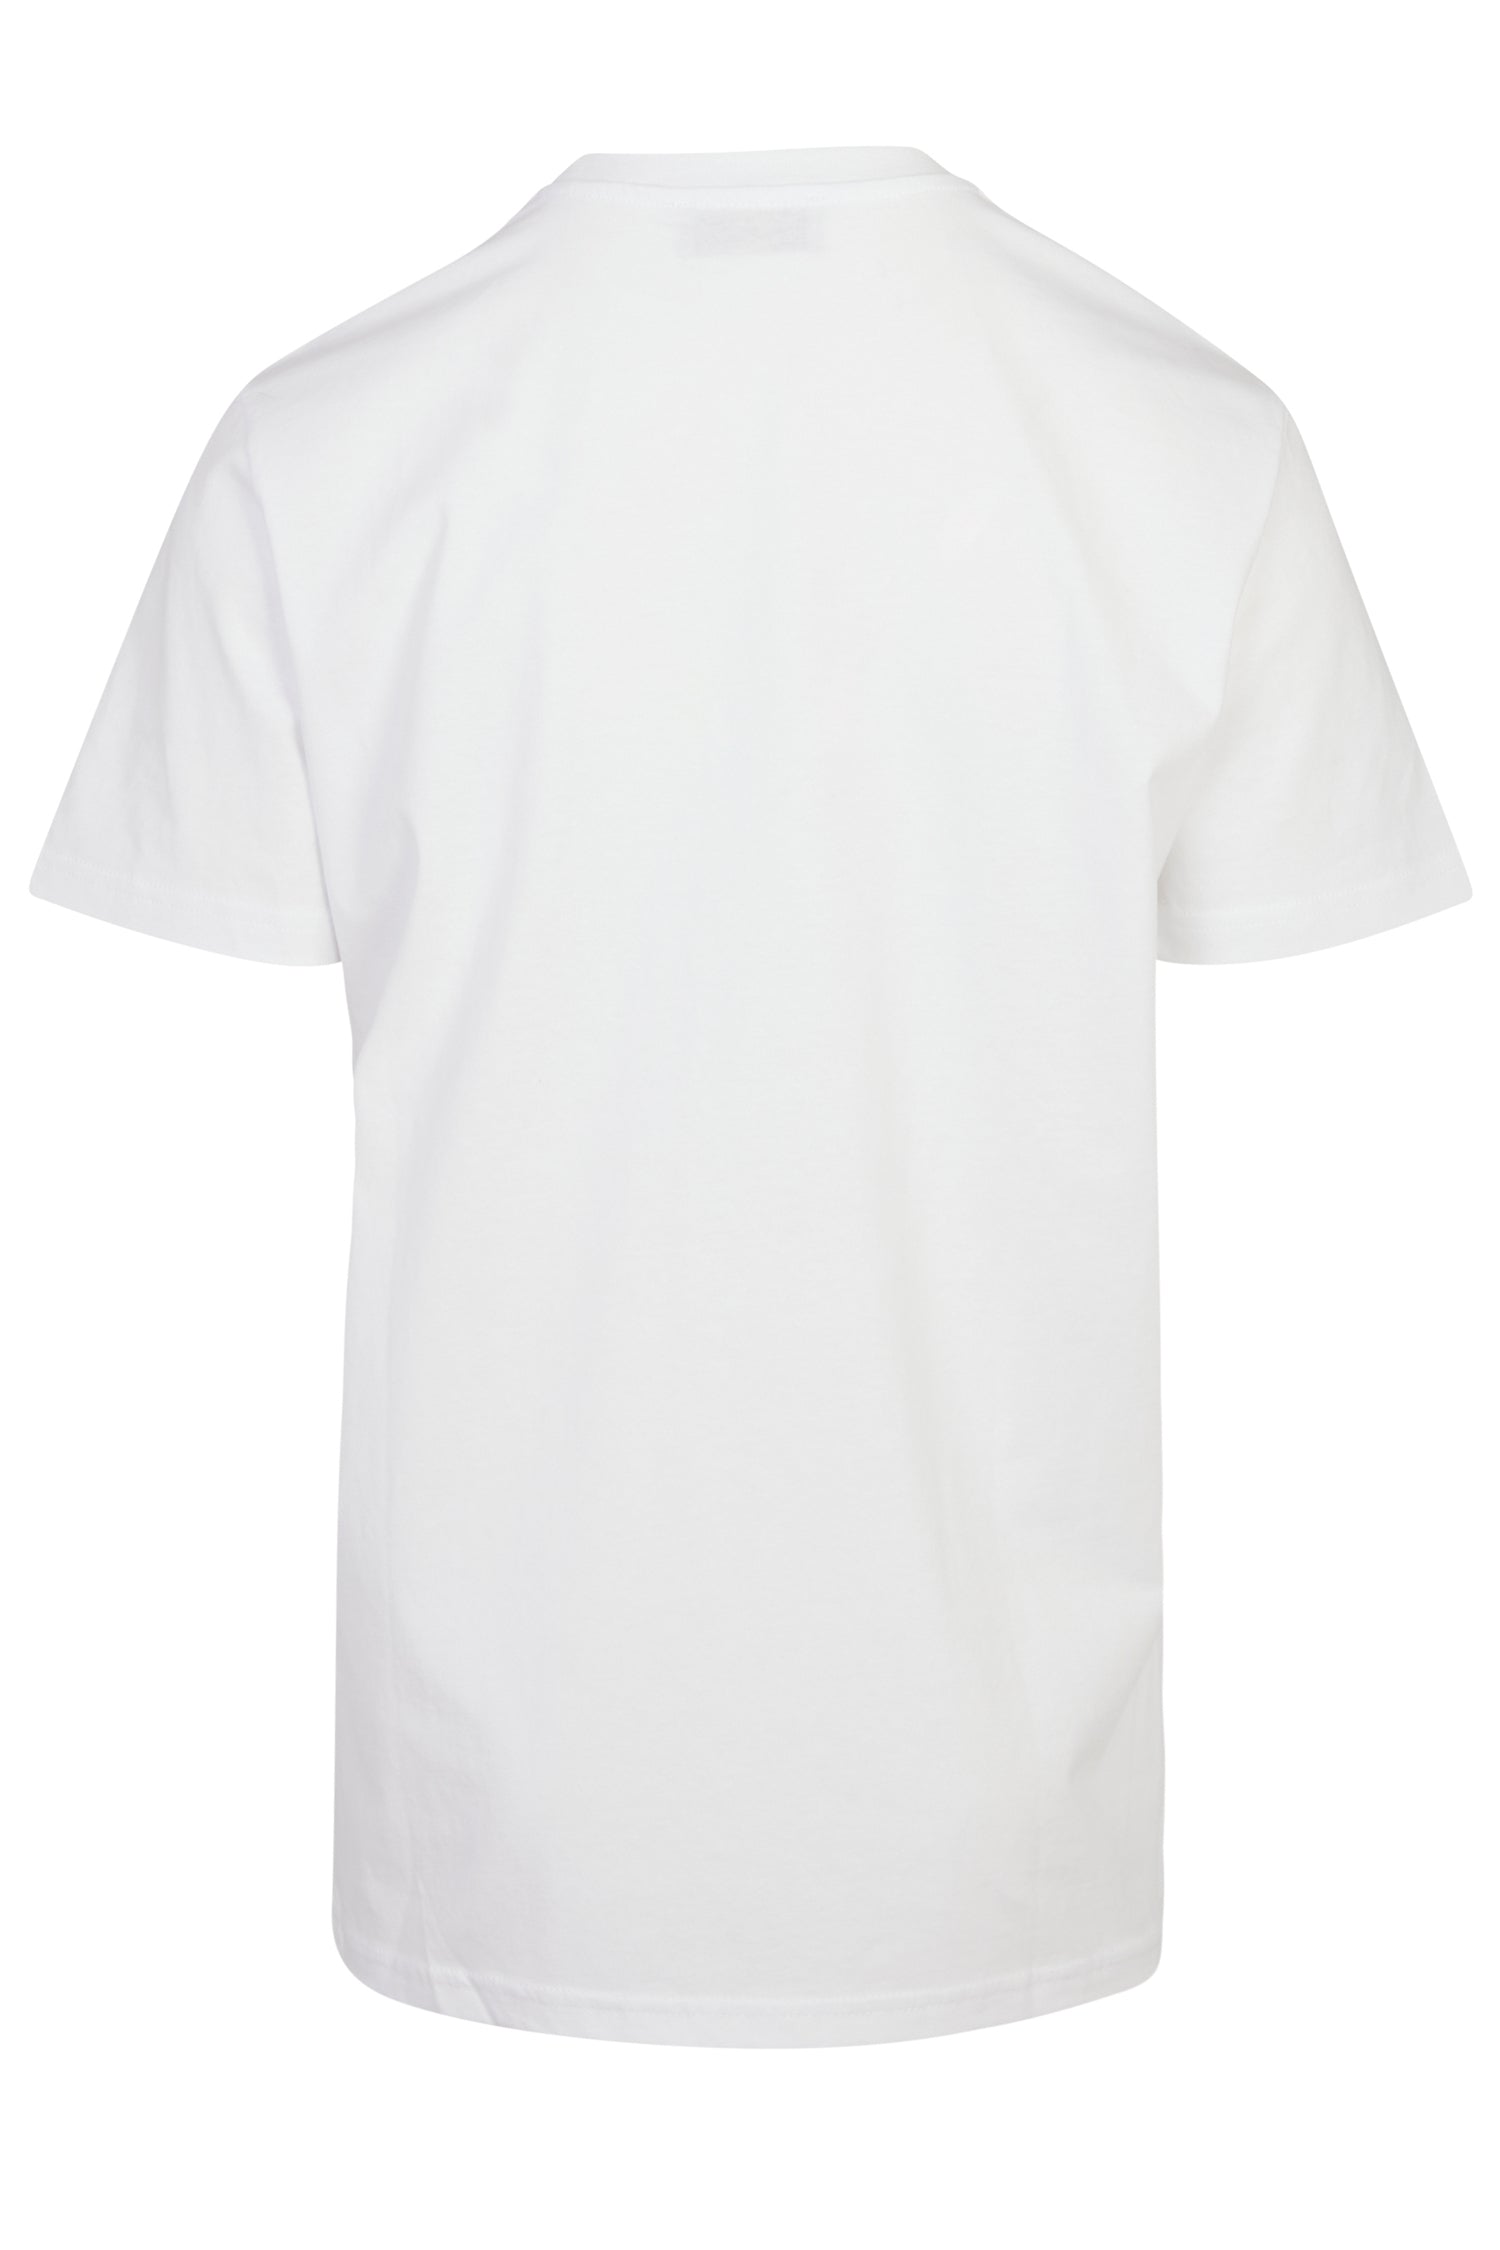 Buy Mens Hanging Boobs Cartoon Boobies T-Shirt Large White Online at  desertcartUAE